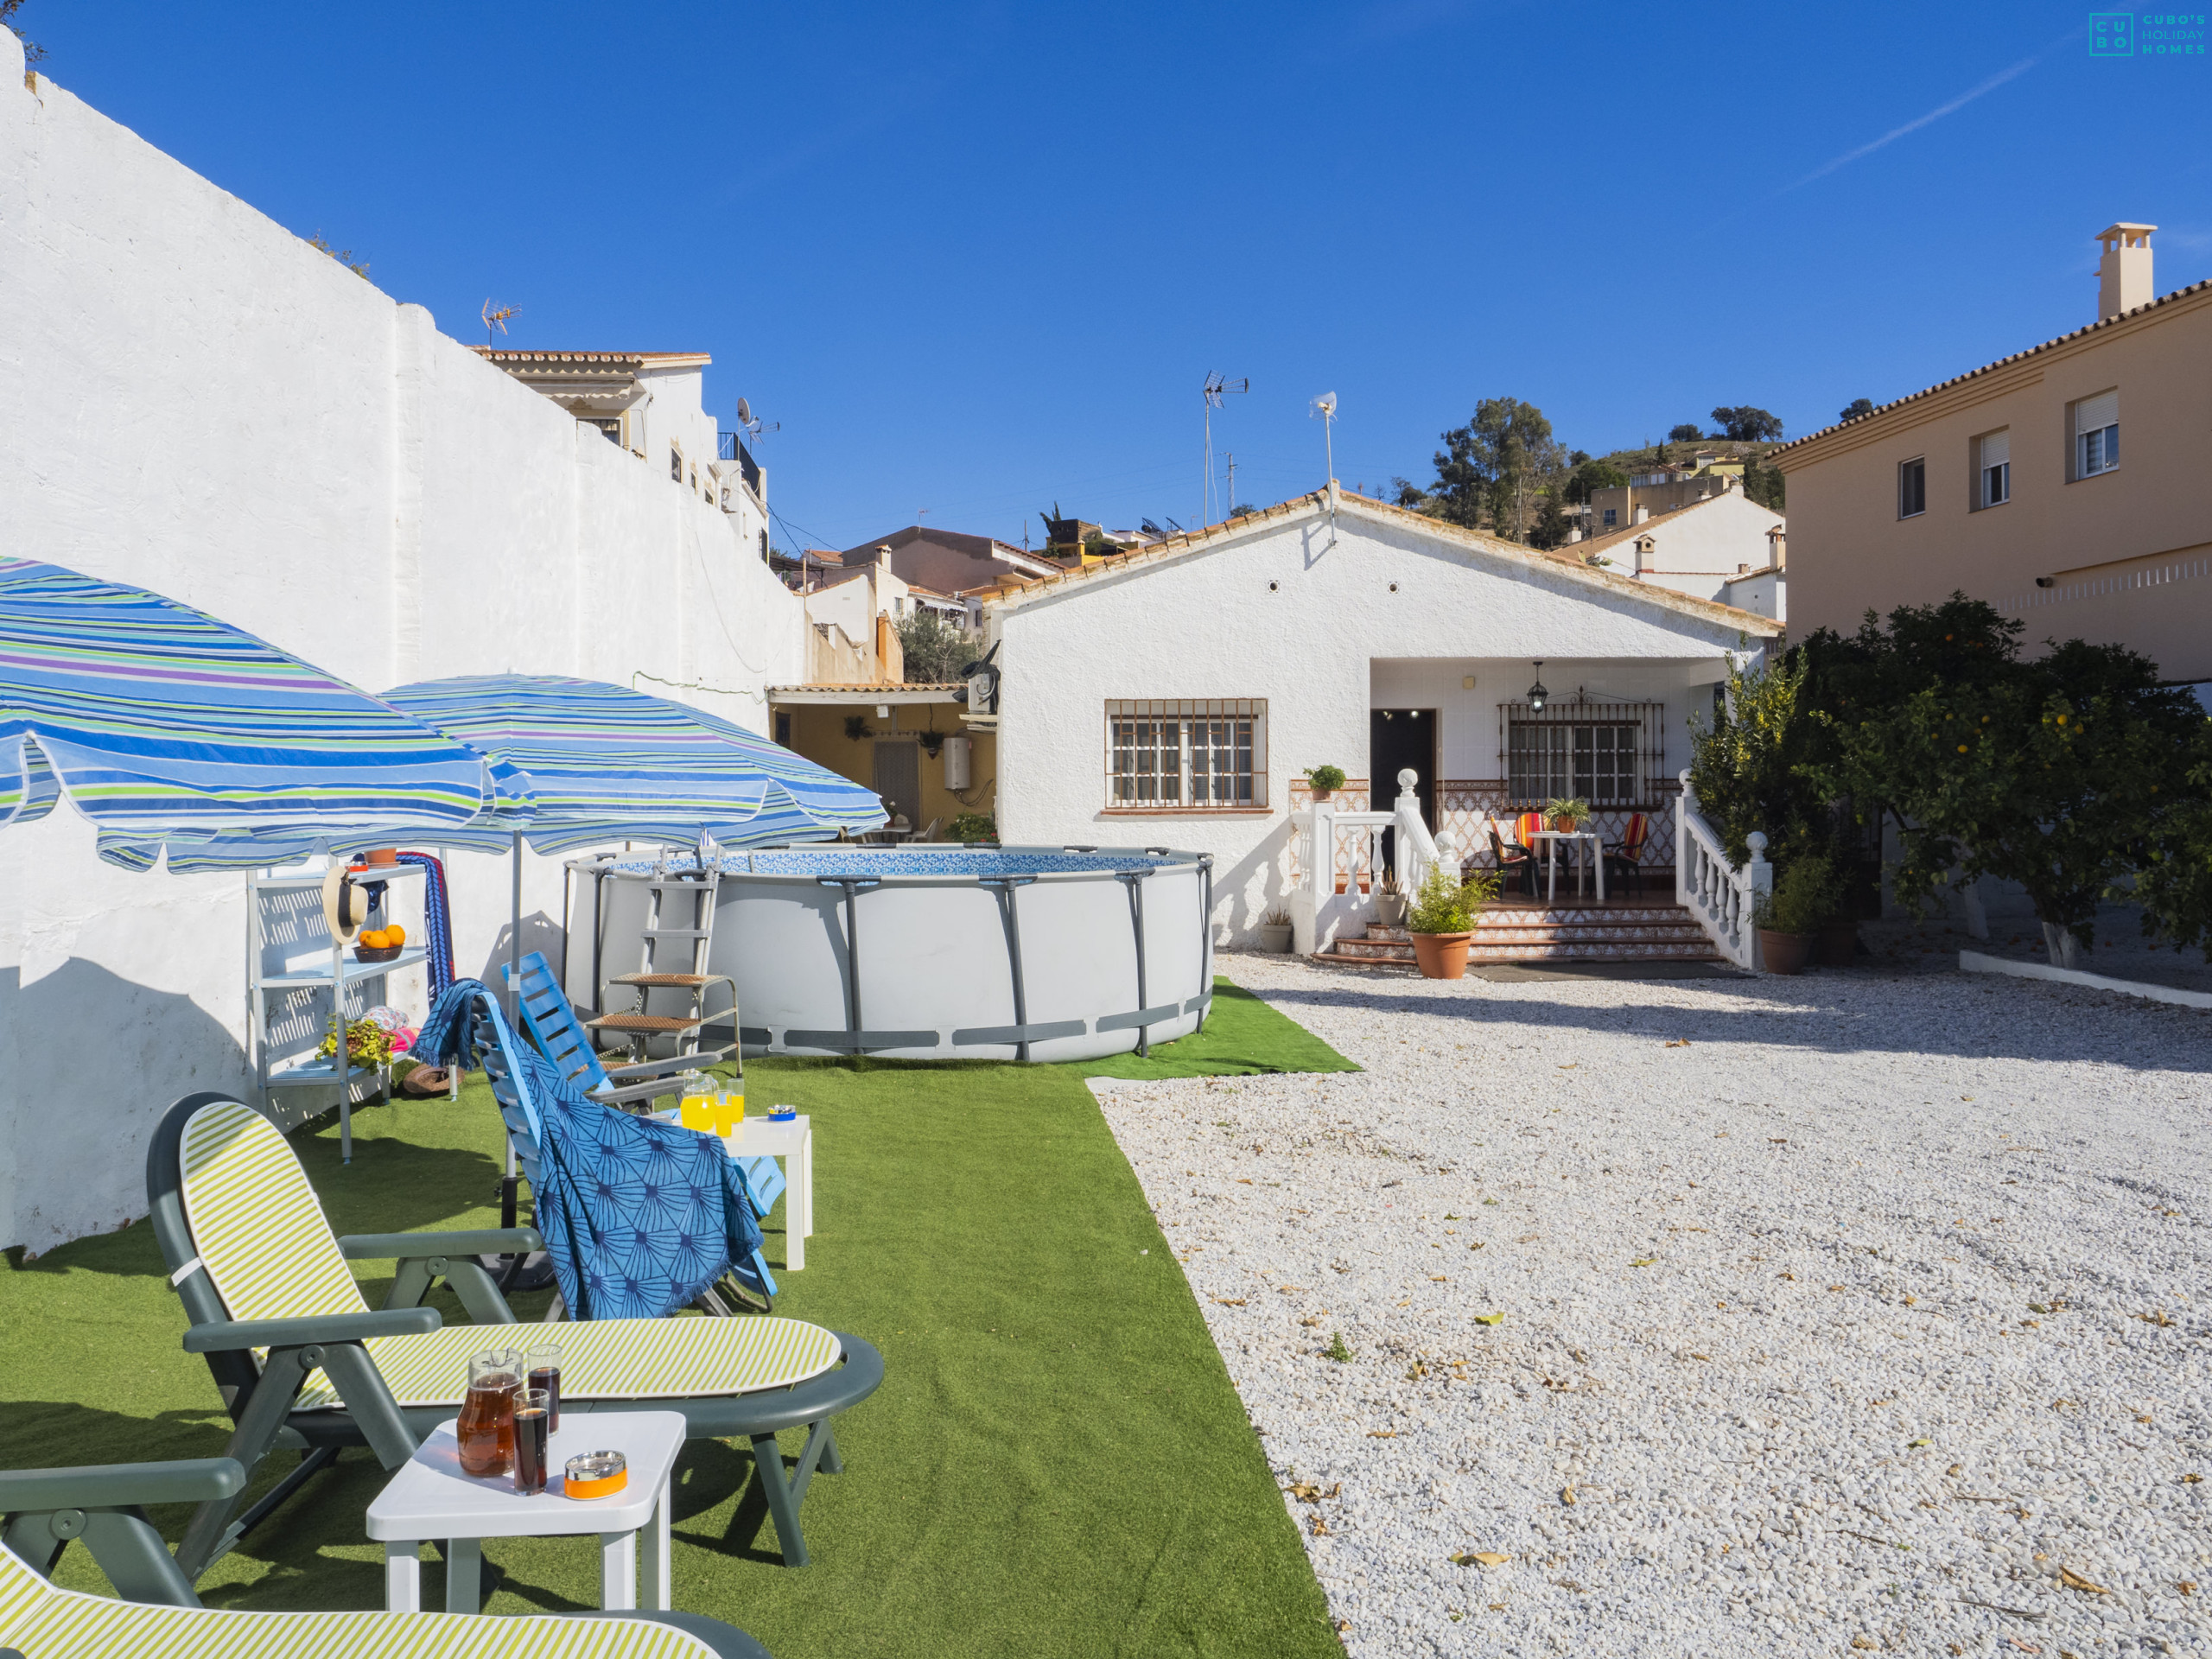 Casa rural para 6 personas con piscina en Málaga capital